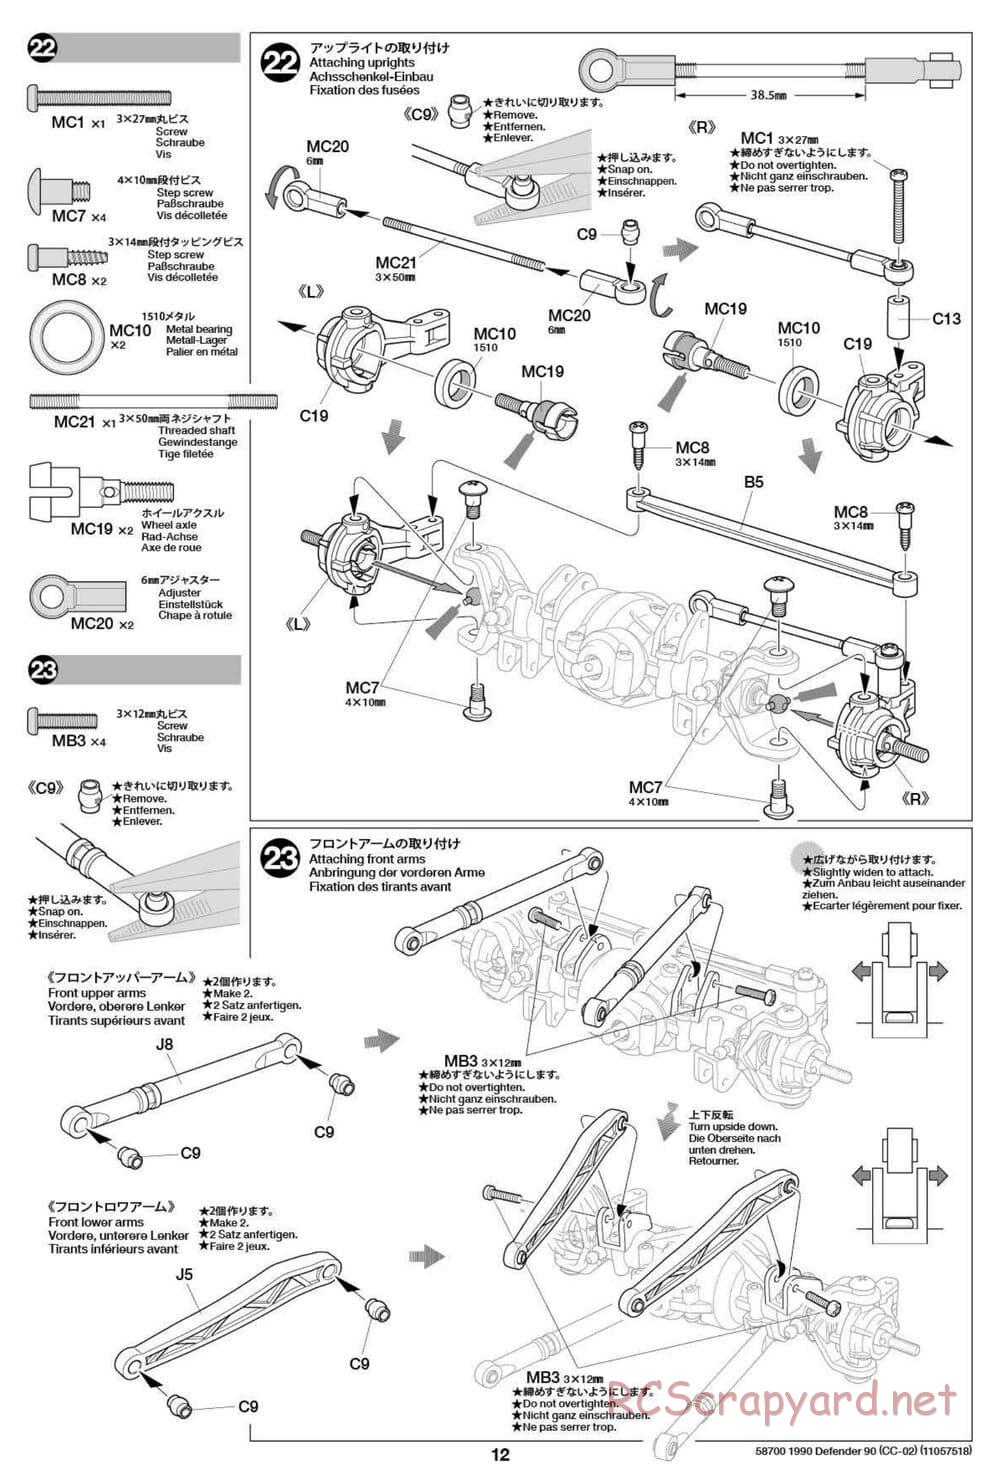 Tamiya - 1990 Land Rover Defender 90 - CC-02 Chassis - Manual - Page 12